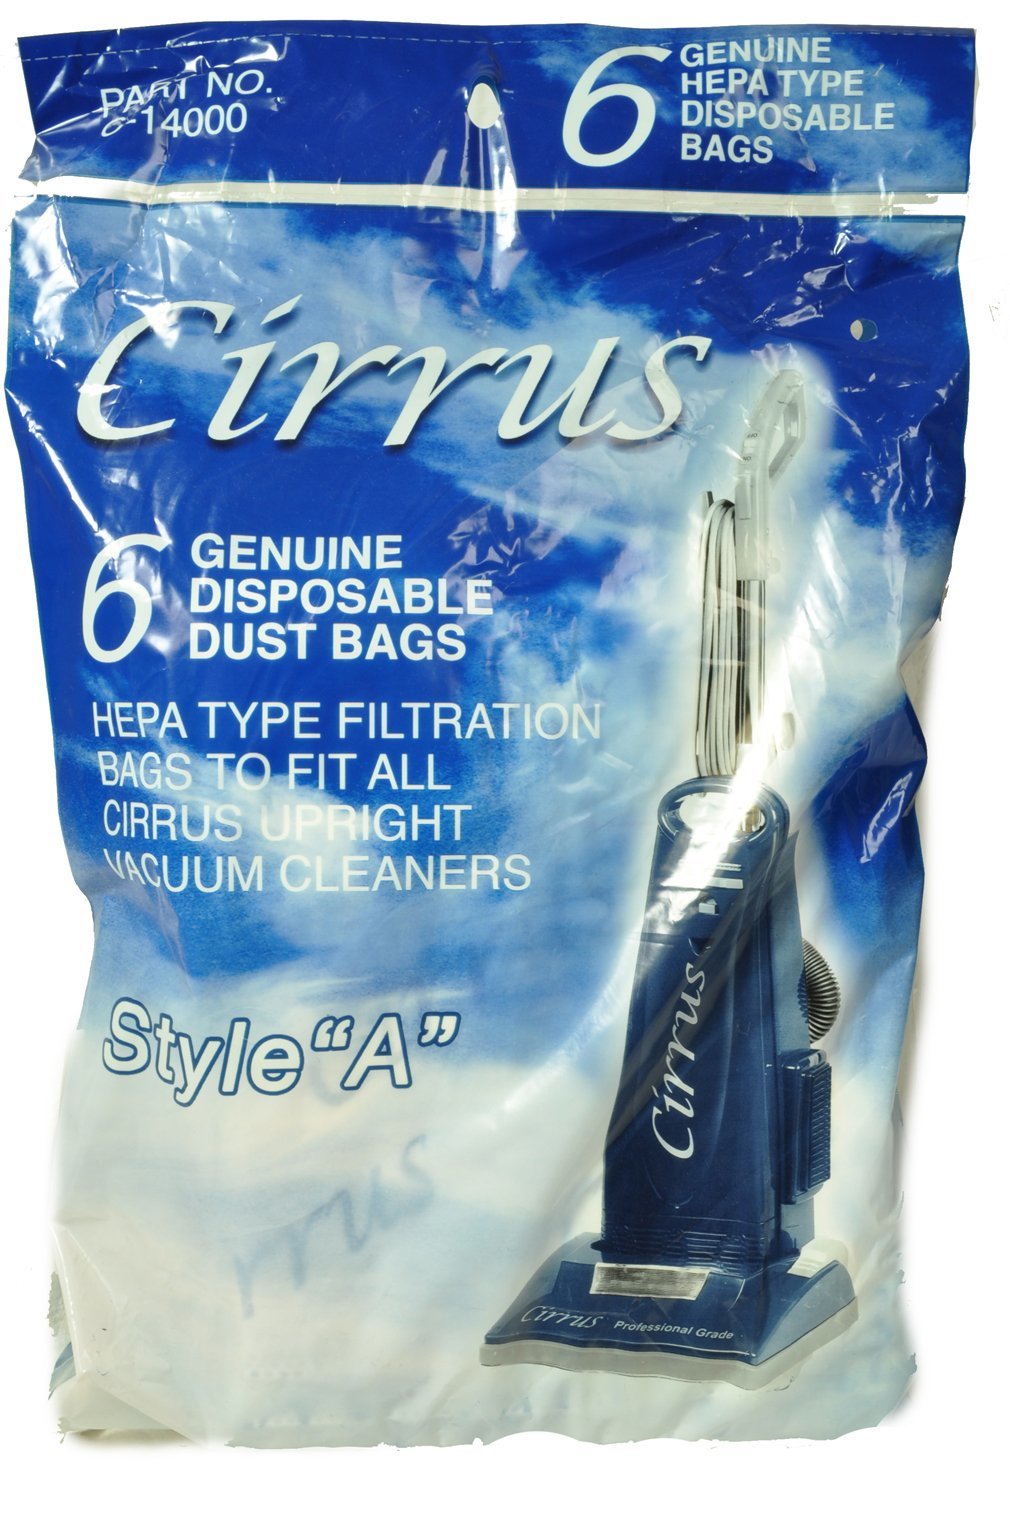 Cirrus Type A Vacuum Cleaner Bags c-14000 - $14.38